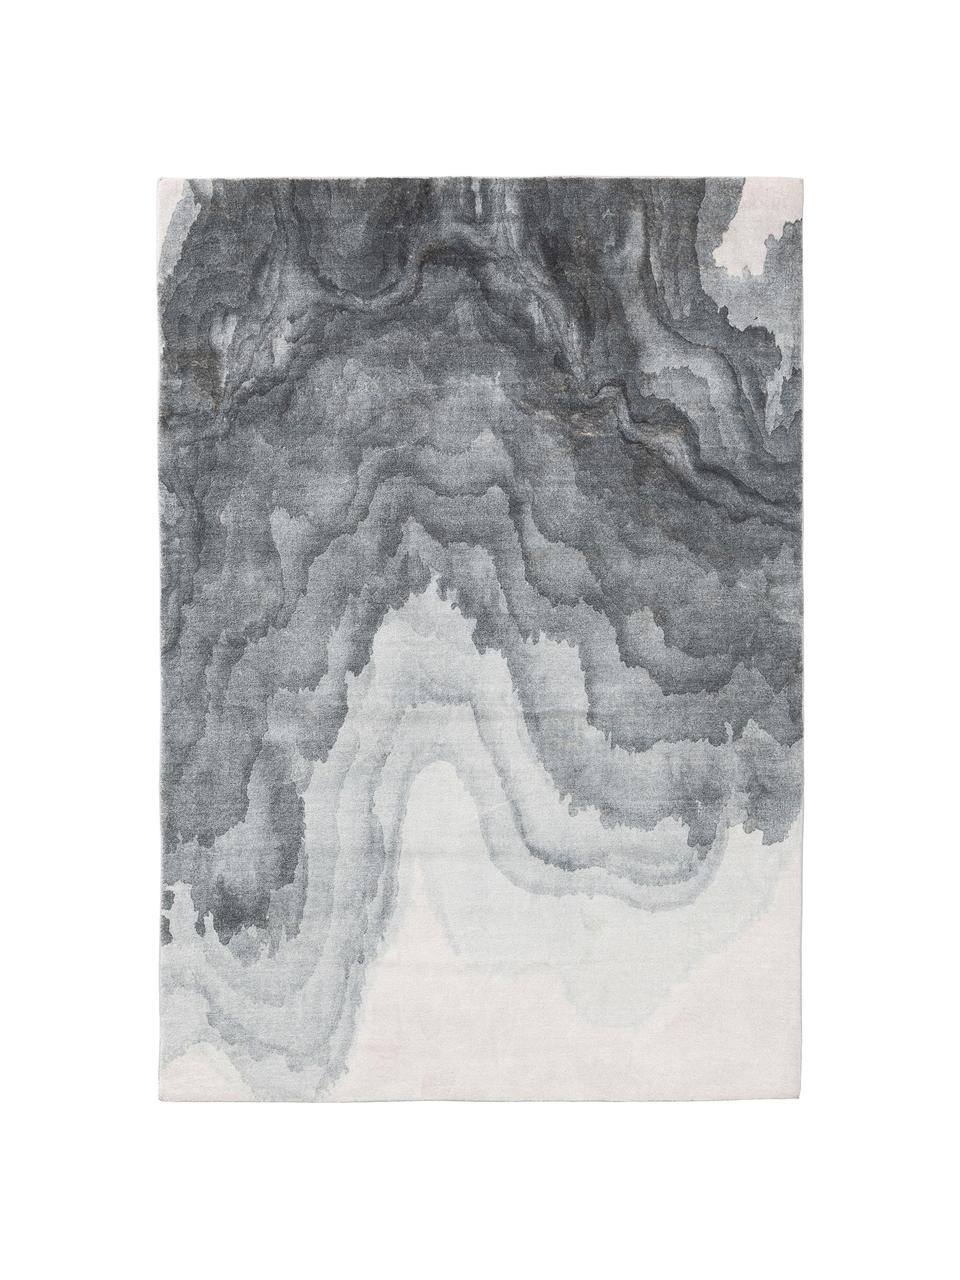 Teppich Mara mit Wellenmotiv in Grautönen, 100% Polyester, Grautöne, B 80 x L 150 cm (Größe XS)